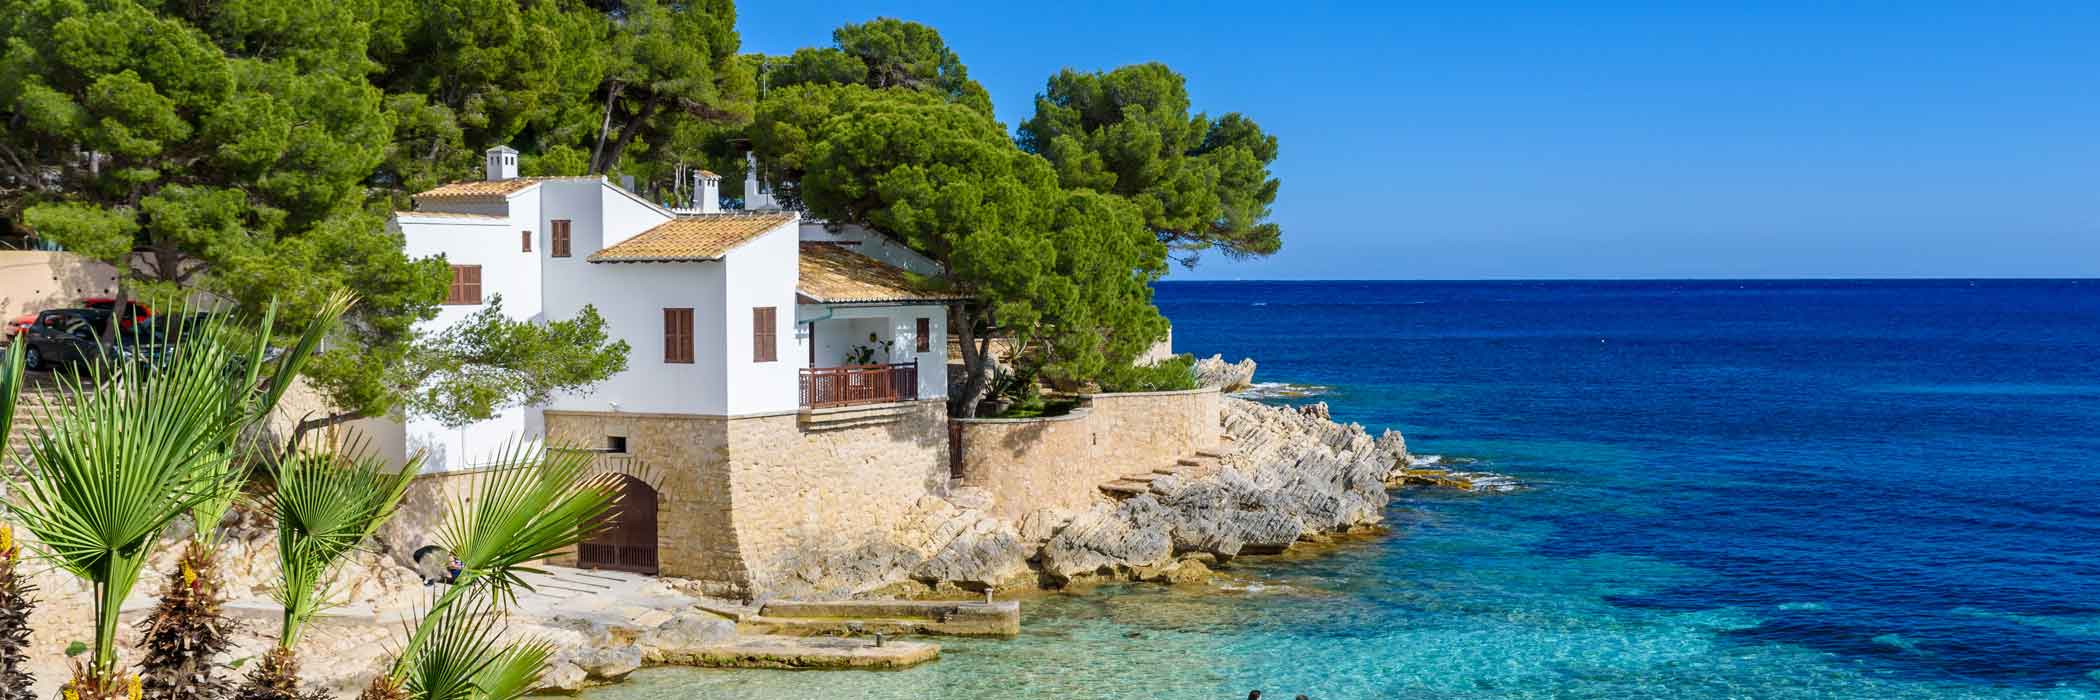 Travel Republic Holidays To Majorca